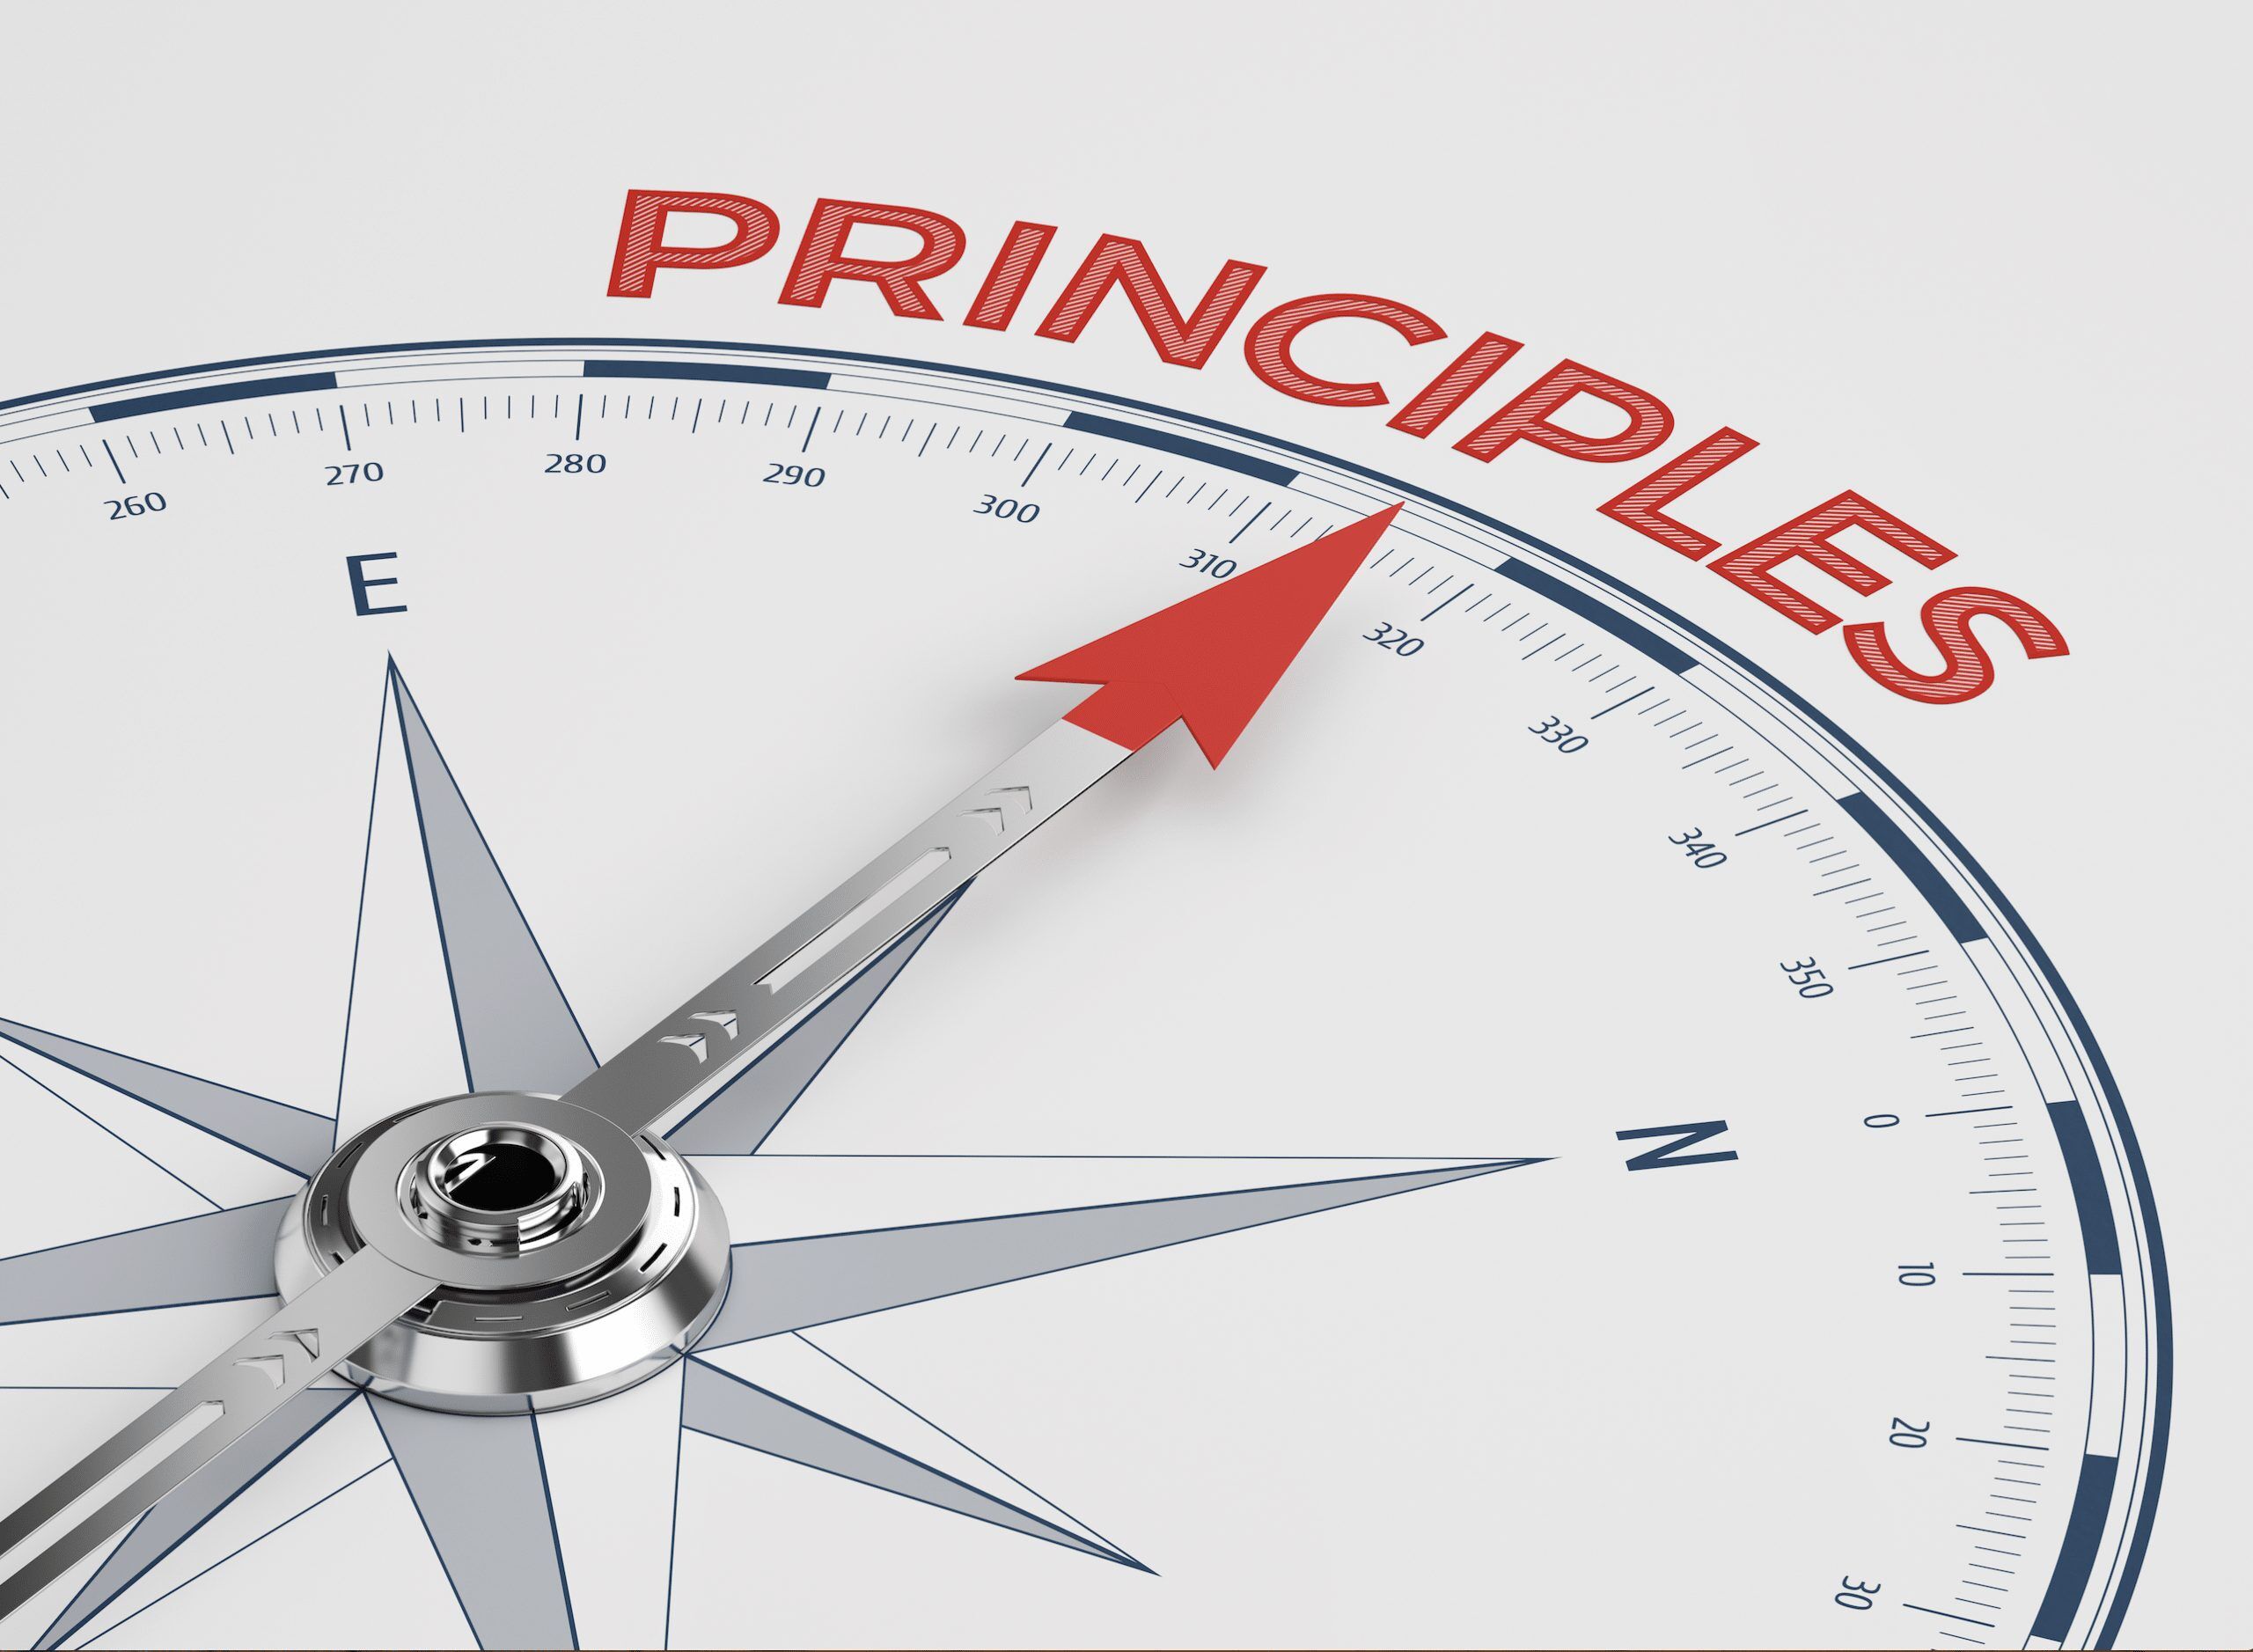 winpro guiding principles